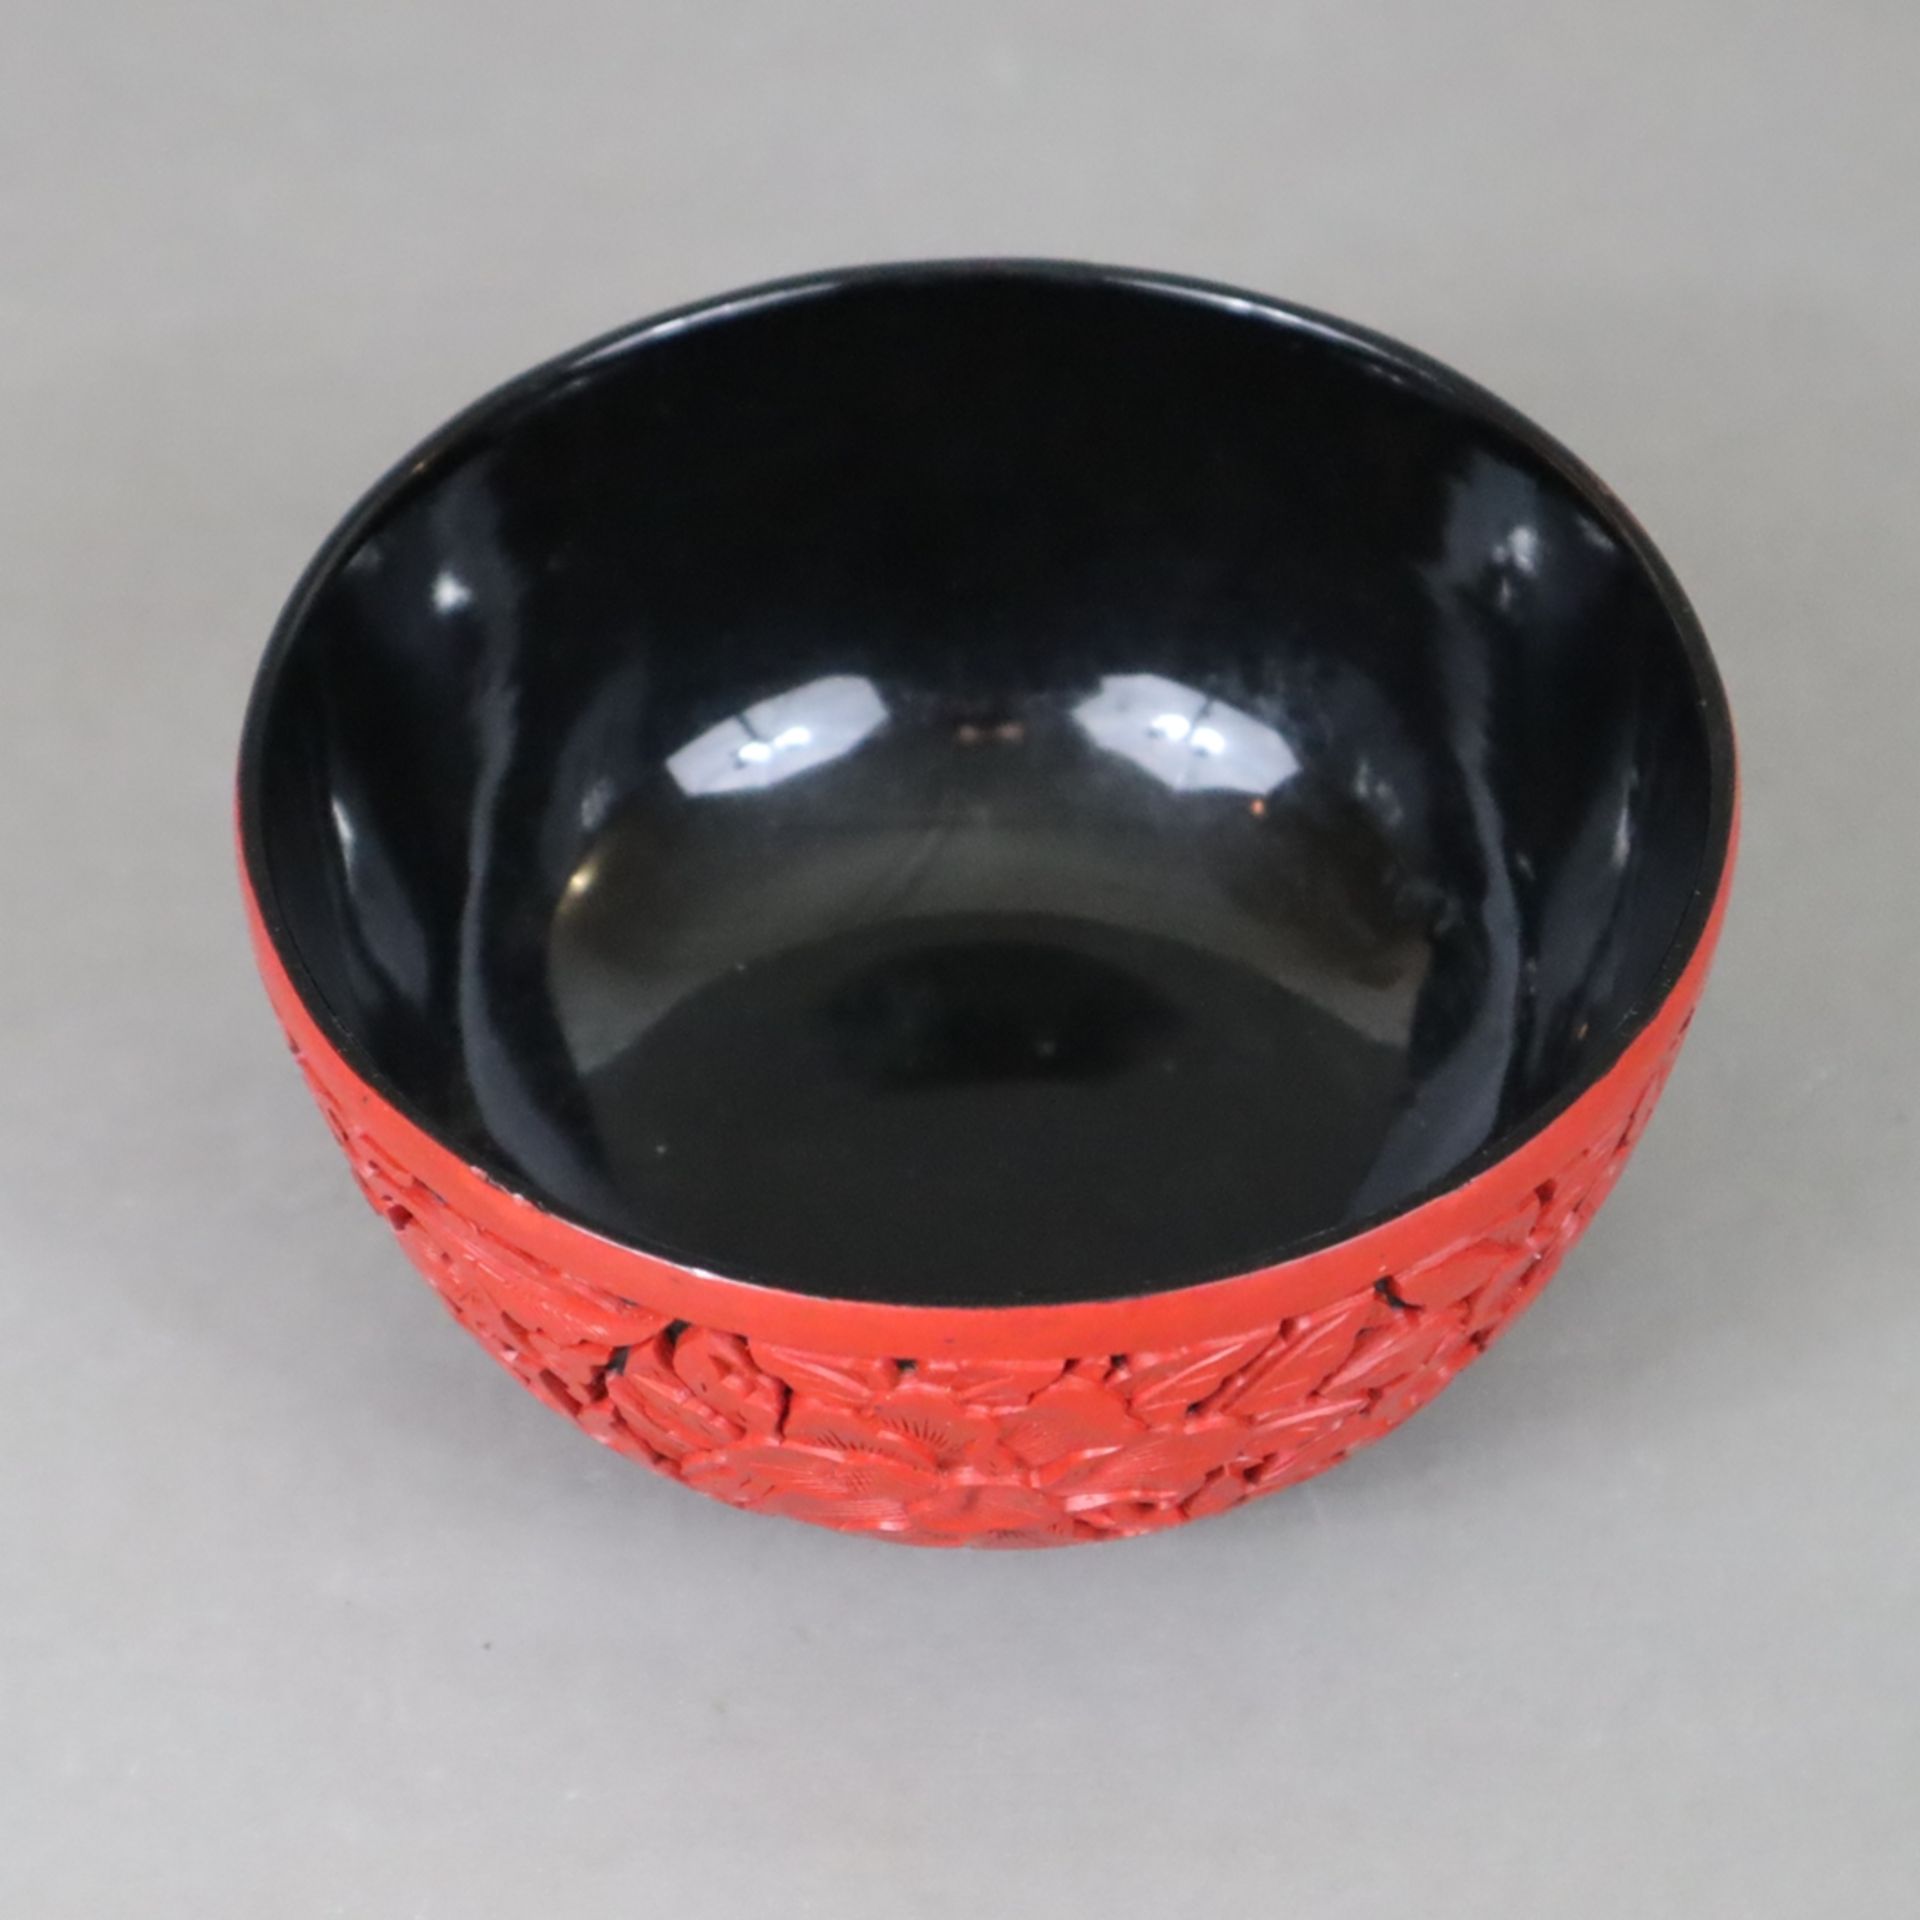 Lackschale - China 20.Jh., runde Form auf schmalem Standring, außen Rotlack mit Päonienblüten, Loto - Bild 2 aus 5